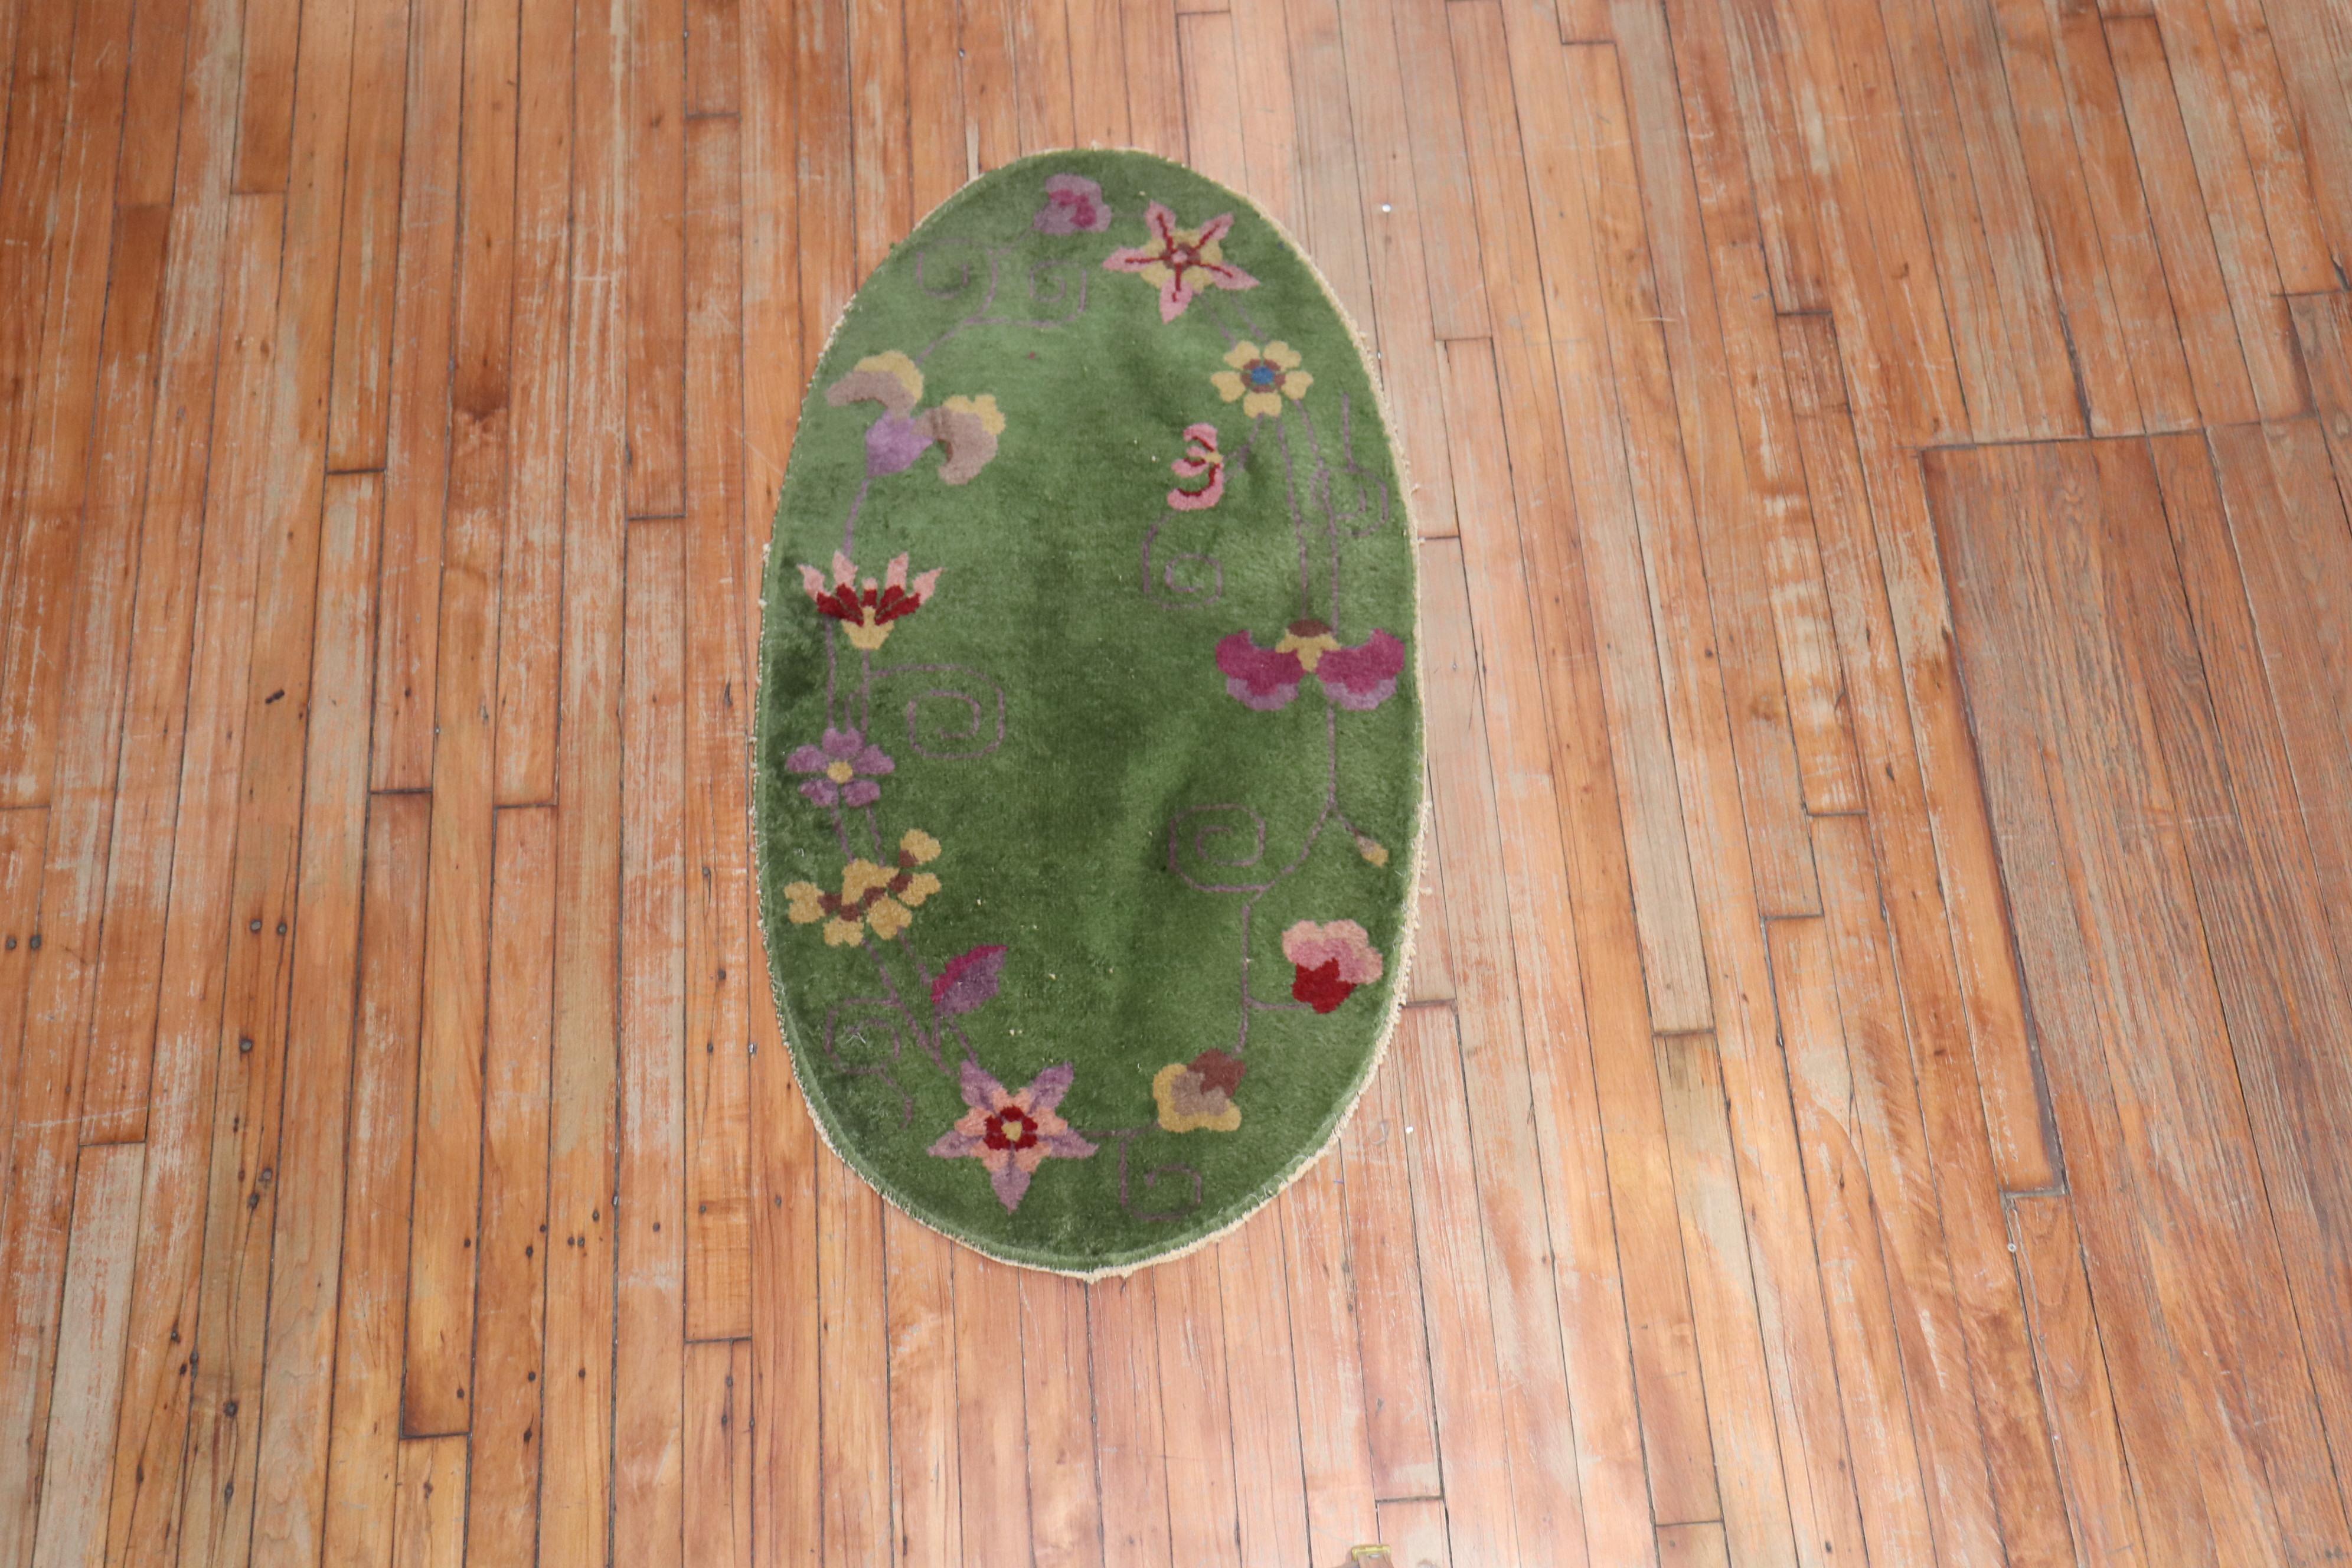 Seltener ovalförmiger grüner chinesischer Art-Déco-Teppich.

Maße: 2' x 3'10''

Chinesische Art-Déco-Teppiche sind bekannt für ihre auffällige Mischung aus asymmetrischen Mustern, leuchtenden Farben und traditionellen Motiven, die kühn, schön